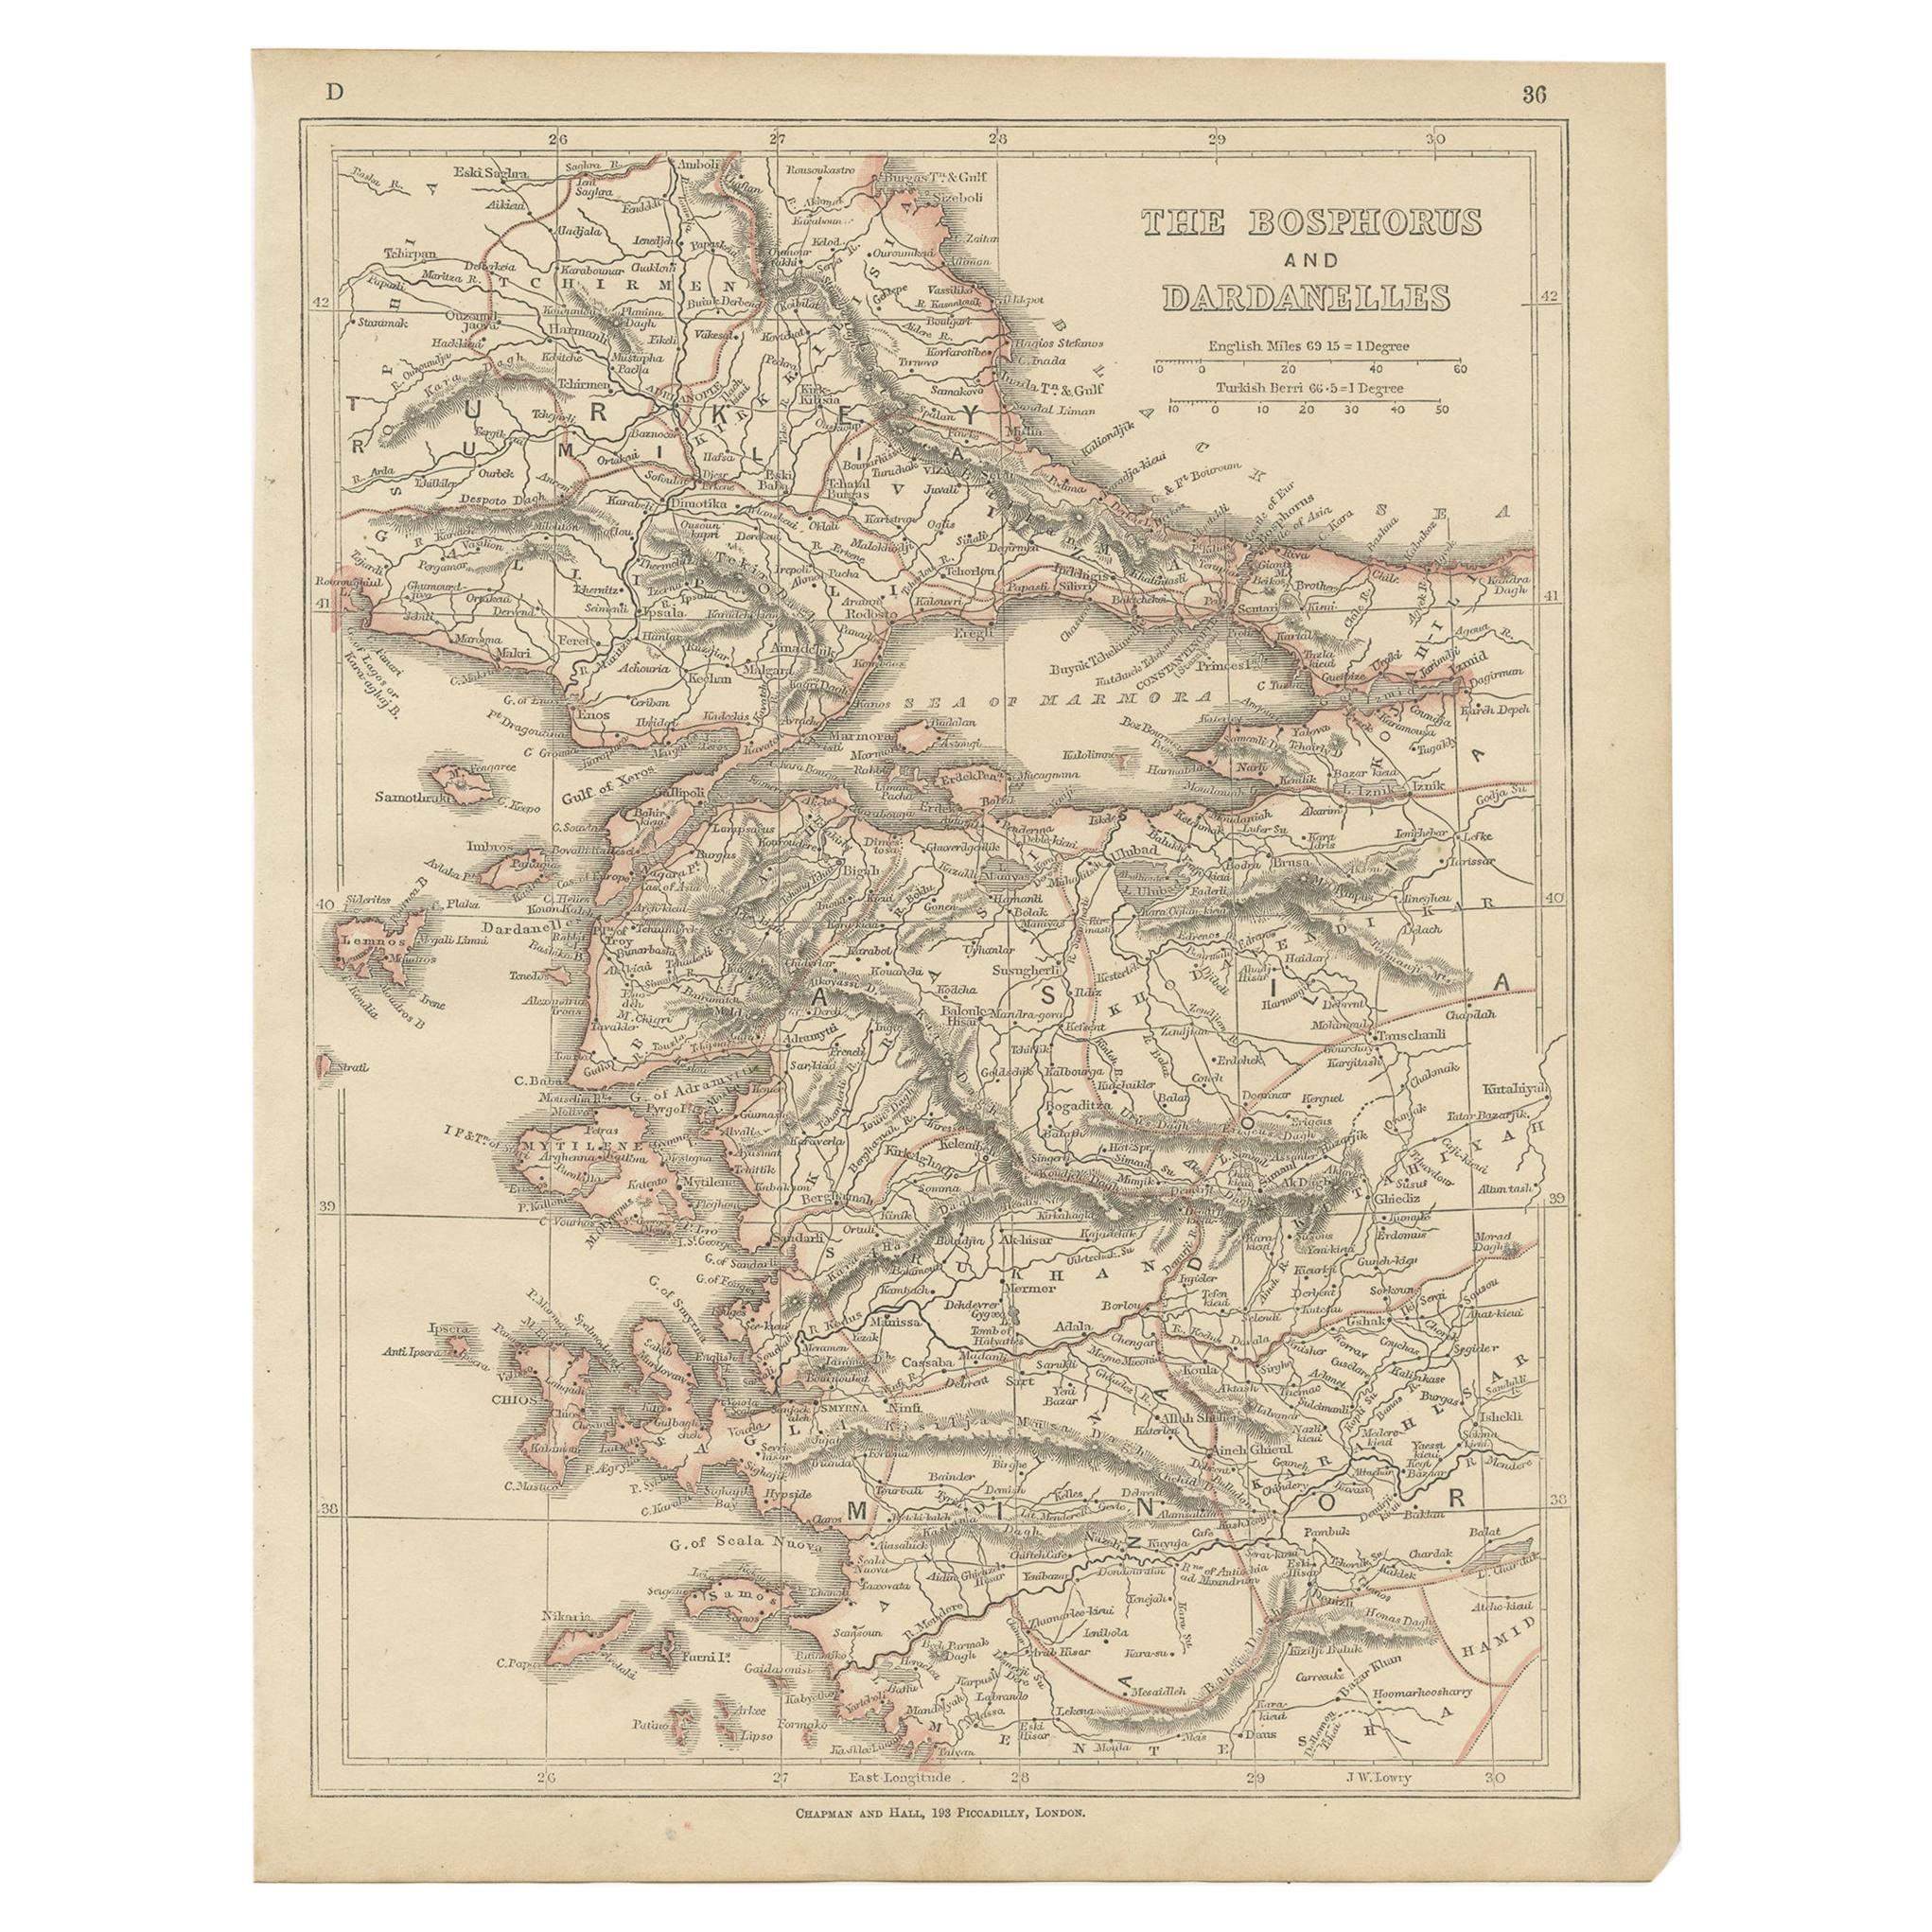 Carte ancienne du Bosporus et des Dardanelles, 1852